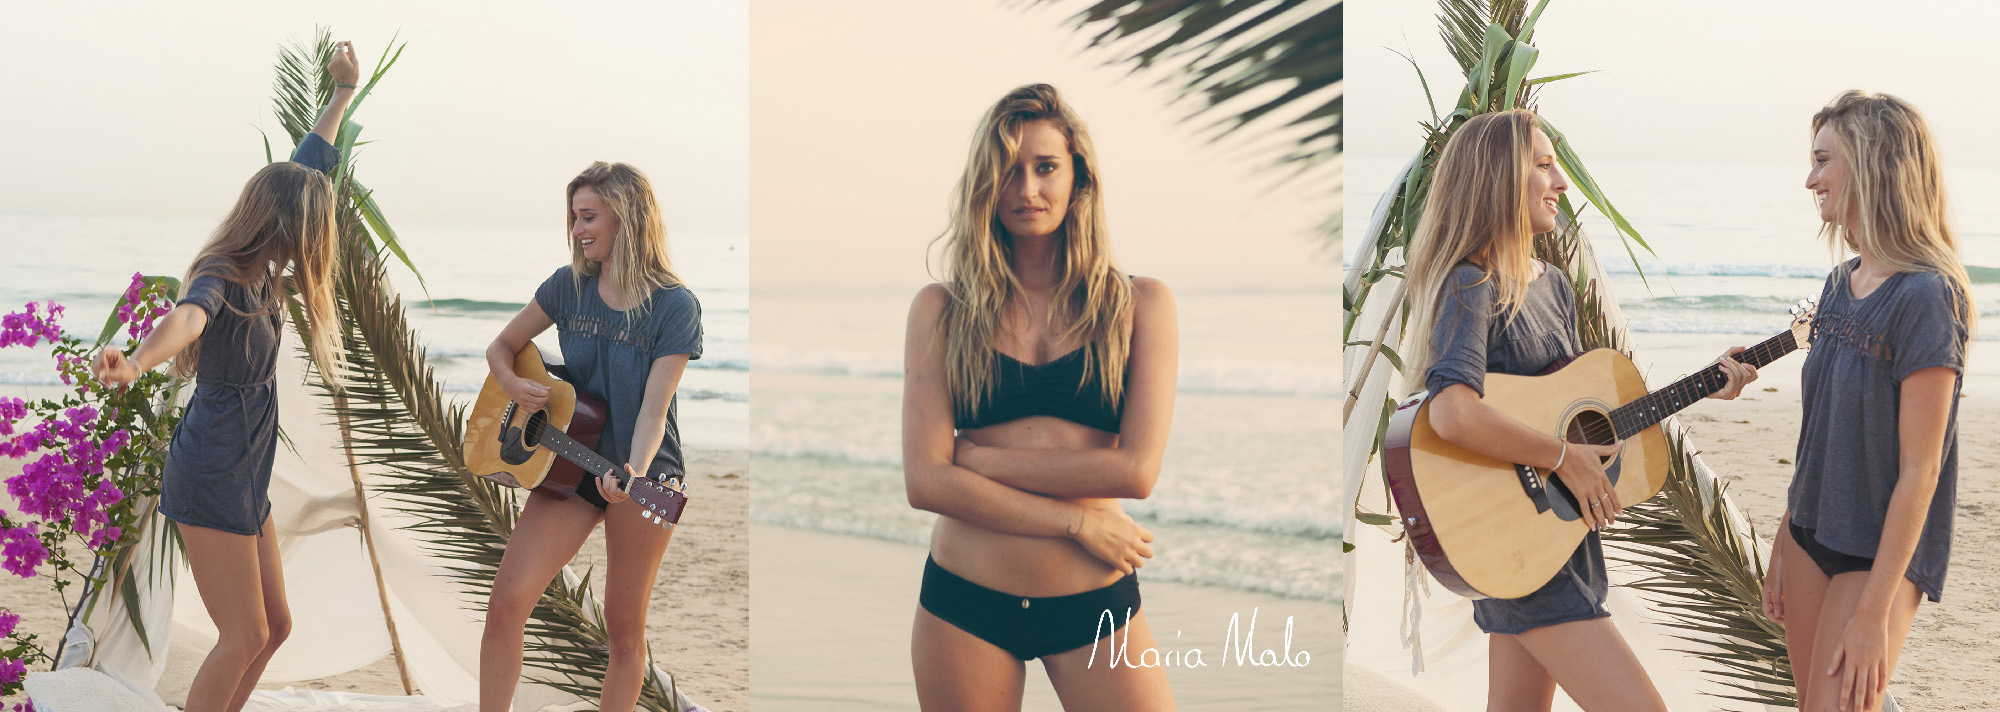 Maria Malo Autumn Collection 2017 - Beach day